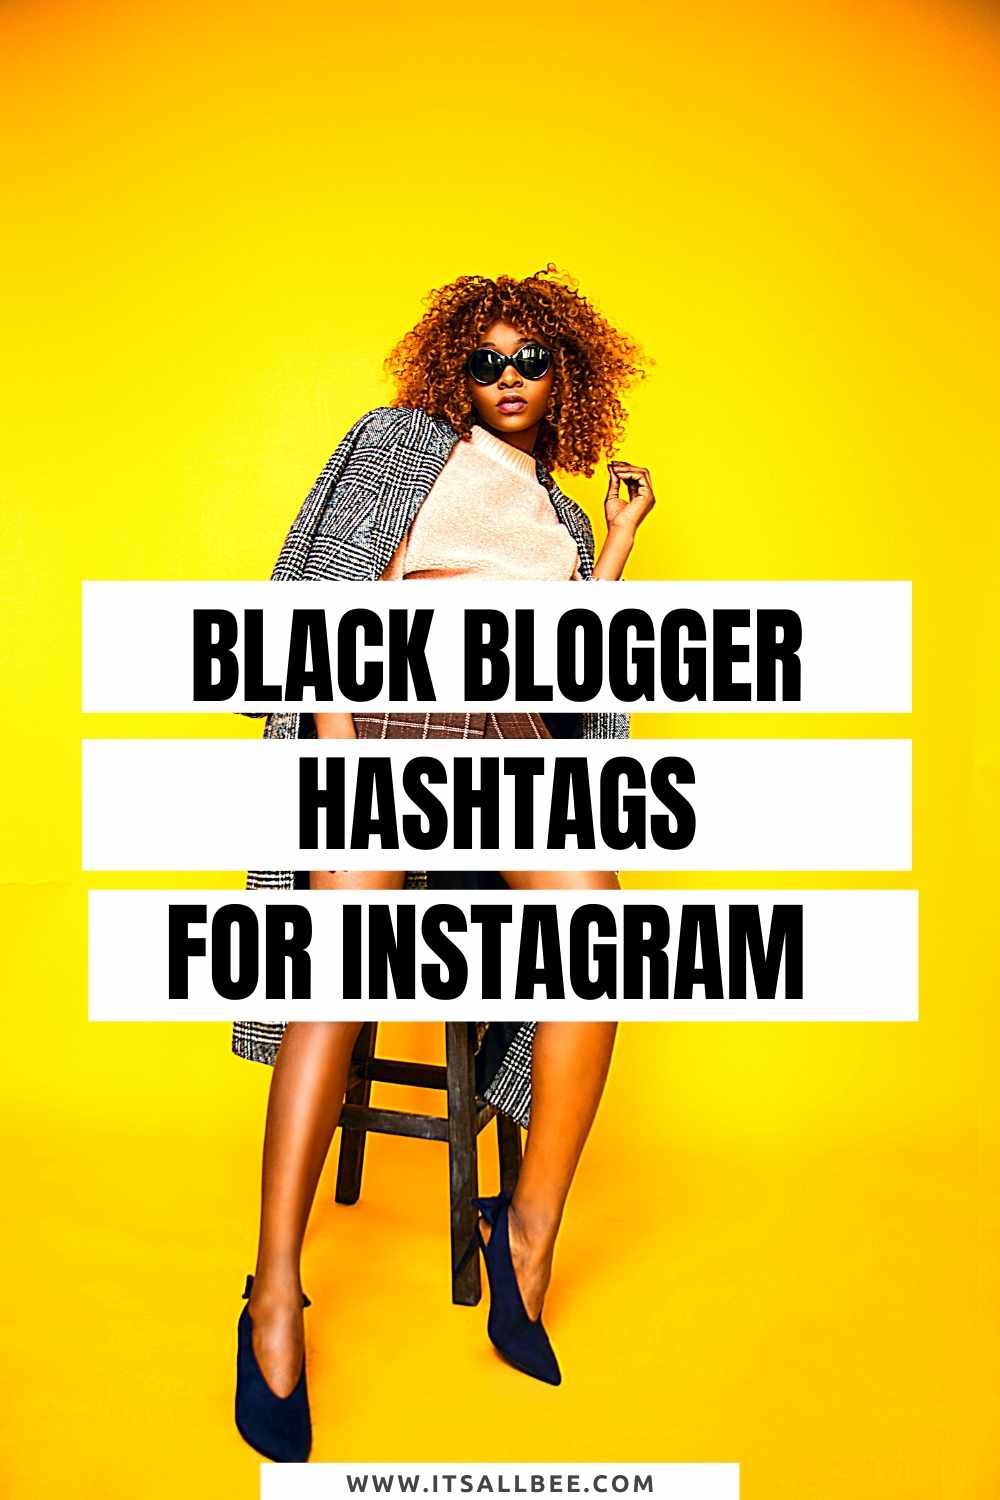 Best Blogger Hashtags On Instagram - mom blogger - fashion blogger - uk blogger - black blogger - lifestyle blogger - travel blogger